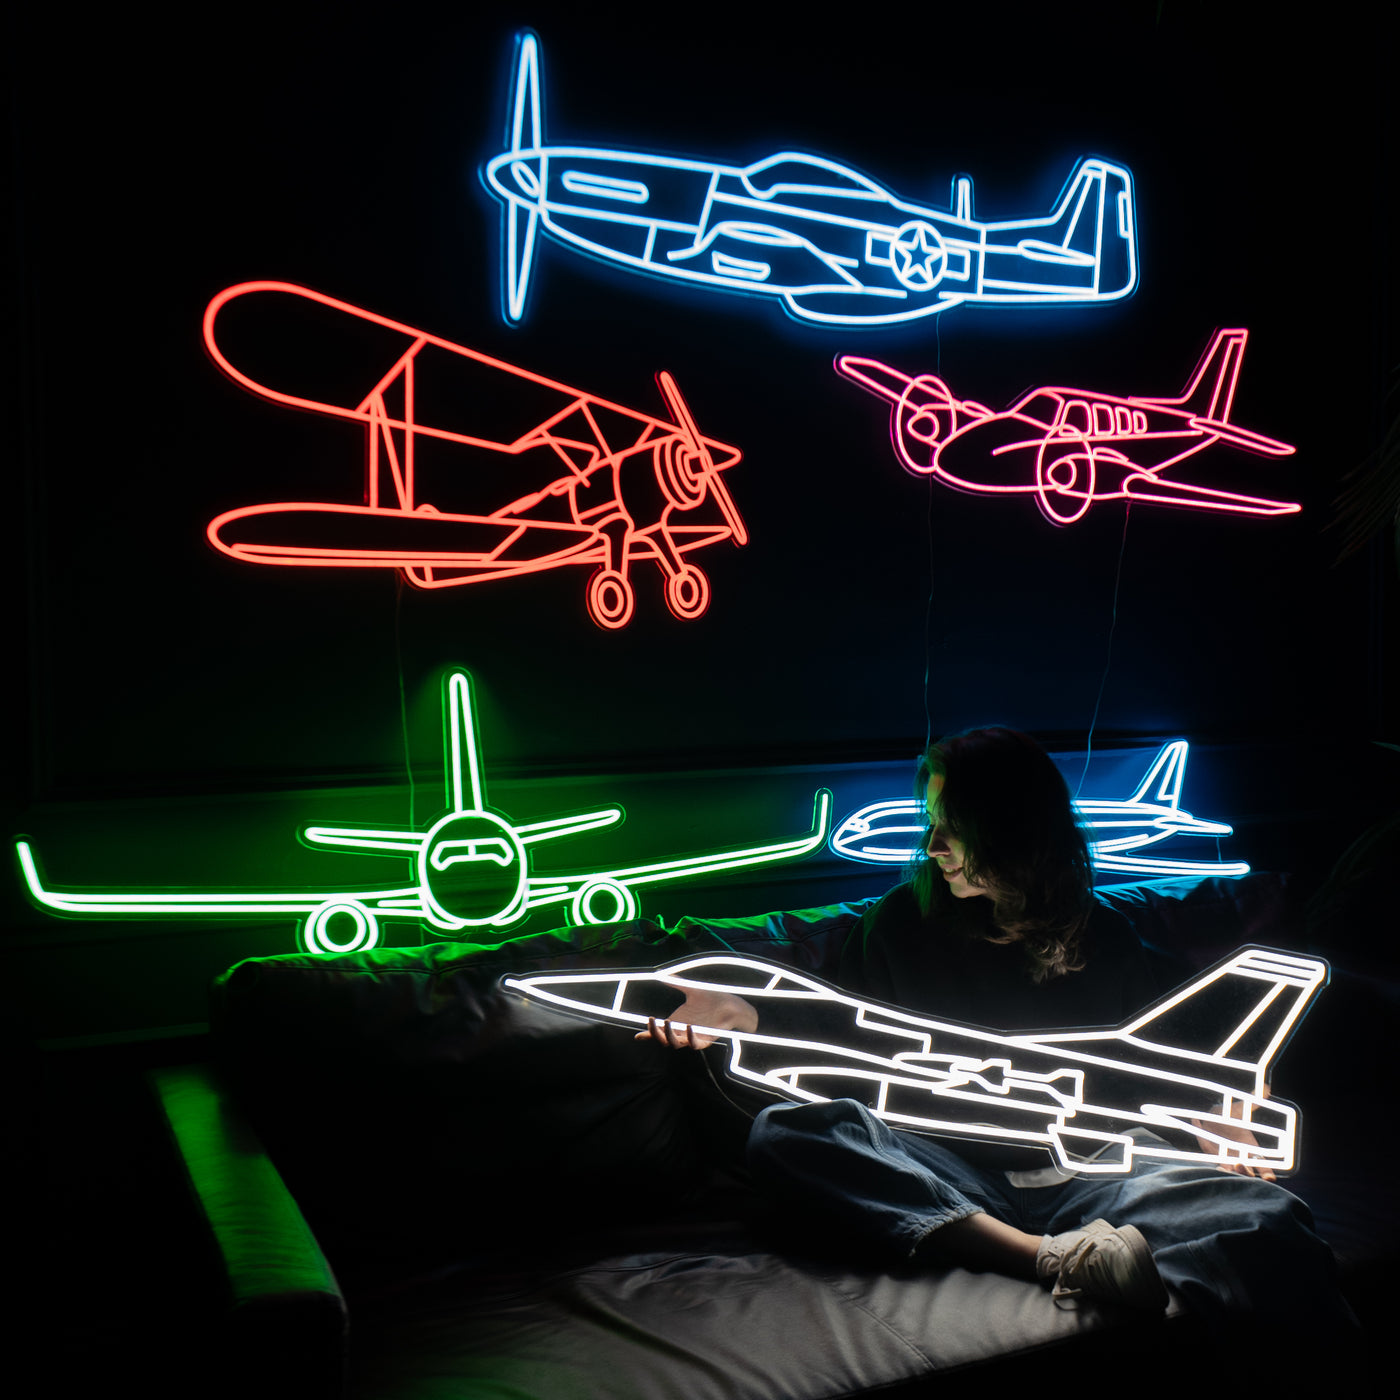 747-800 Neon Silhouette